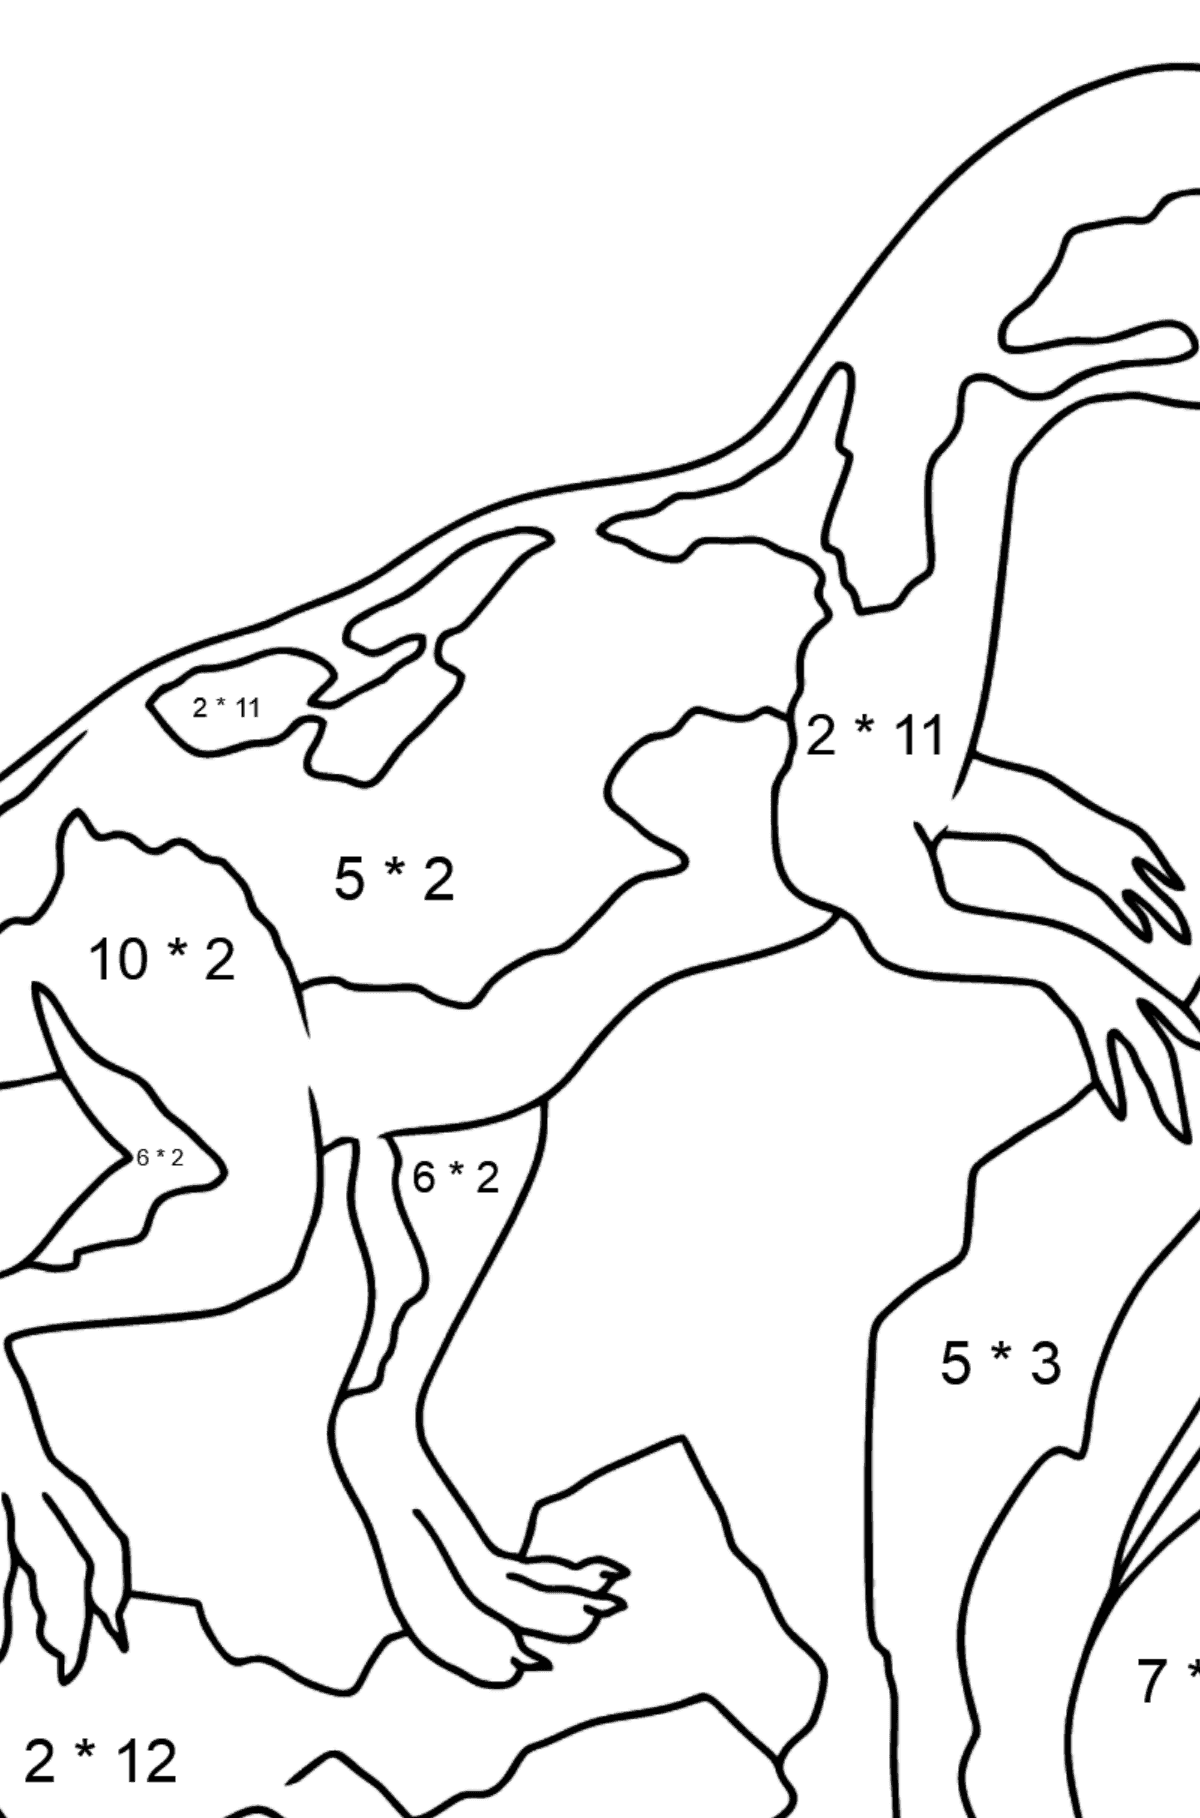 Dinossauro Jurássico para colorir - Colorindo com Matemática - Multiplicação para Crianças